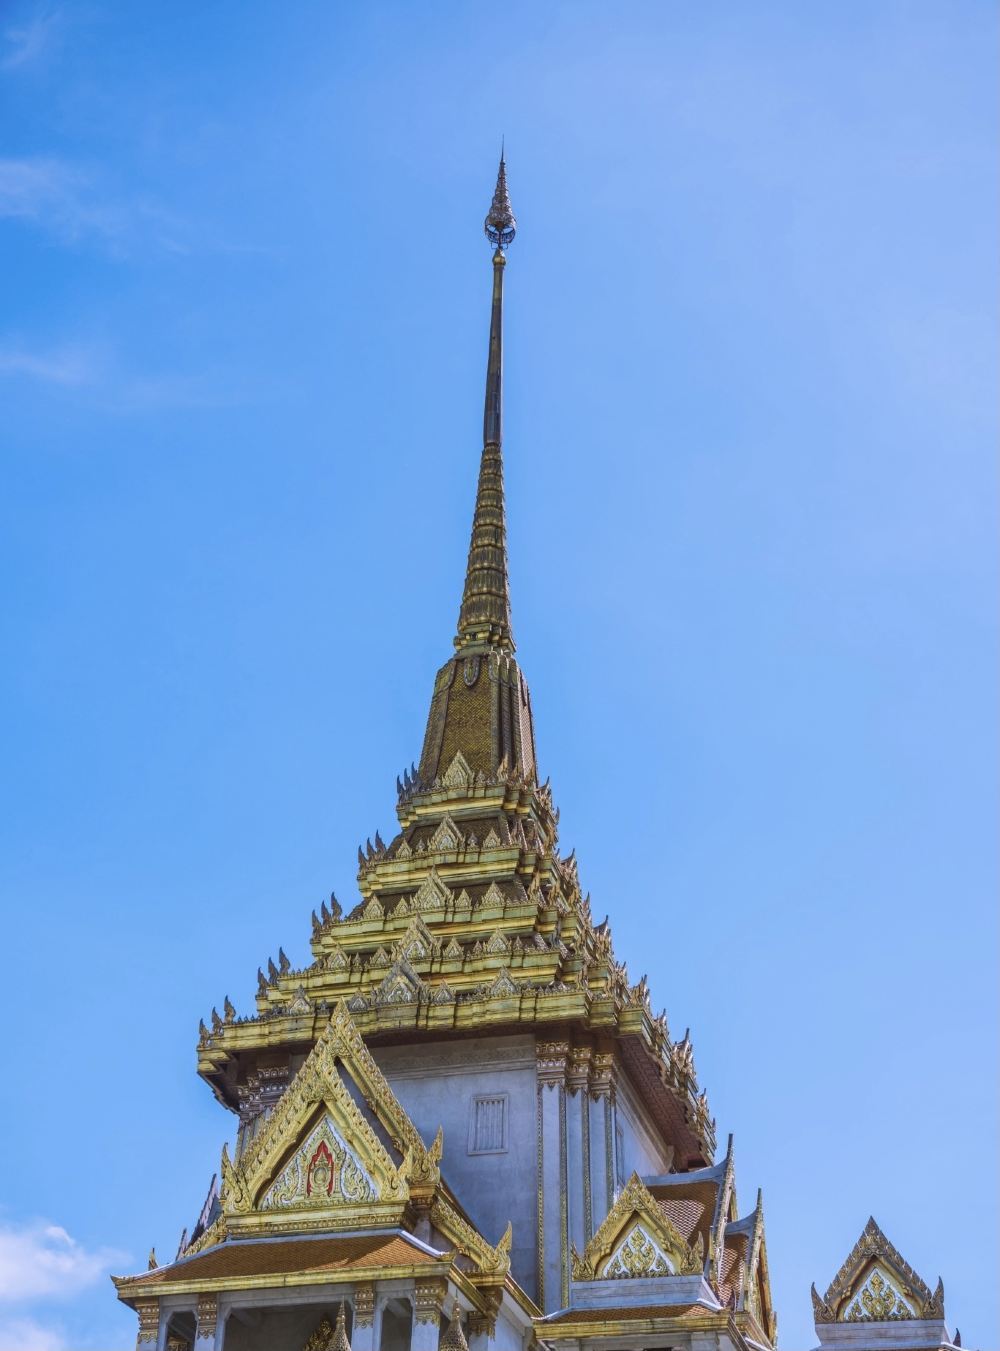 曼谷旅游景点金佛寺高清打卡图片 金佛寺景点真